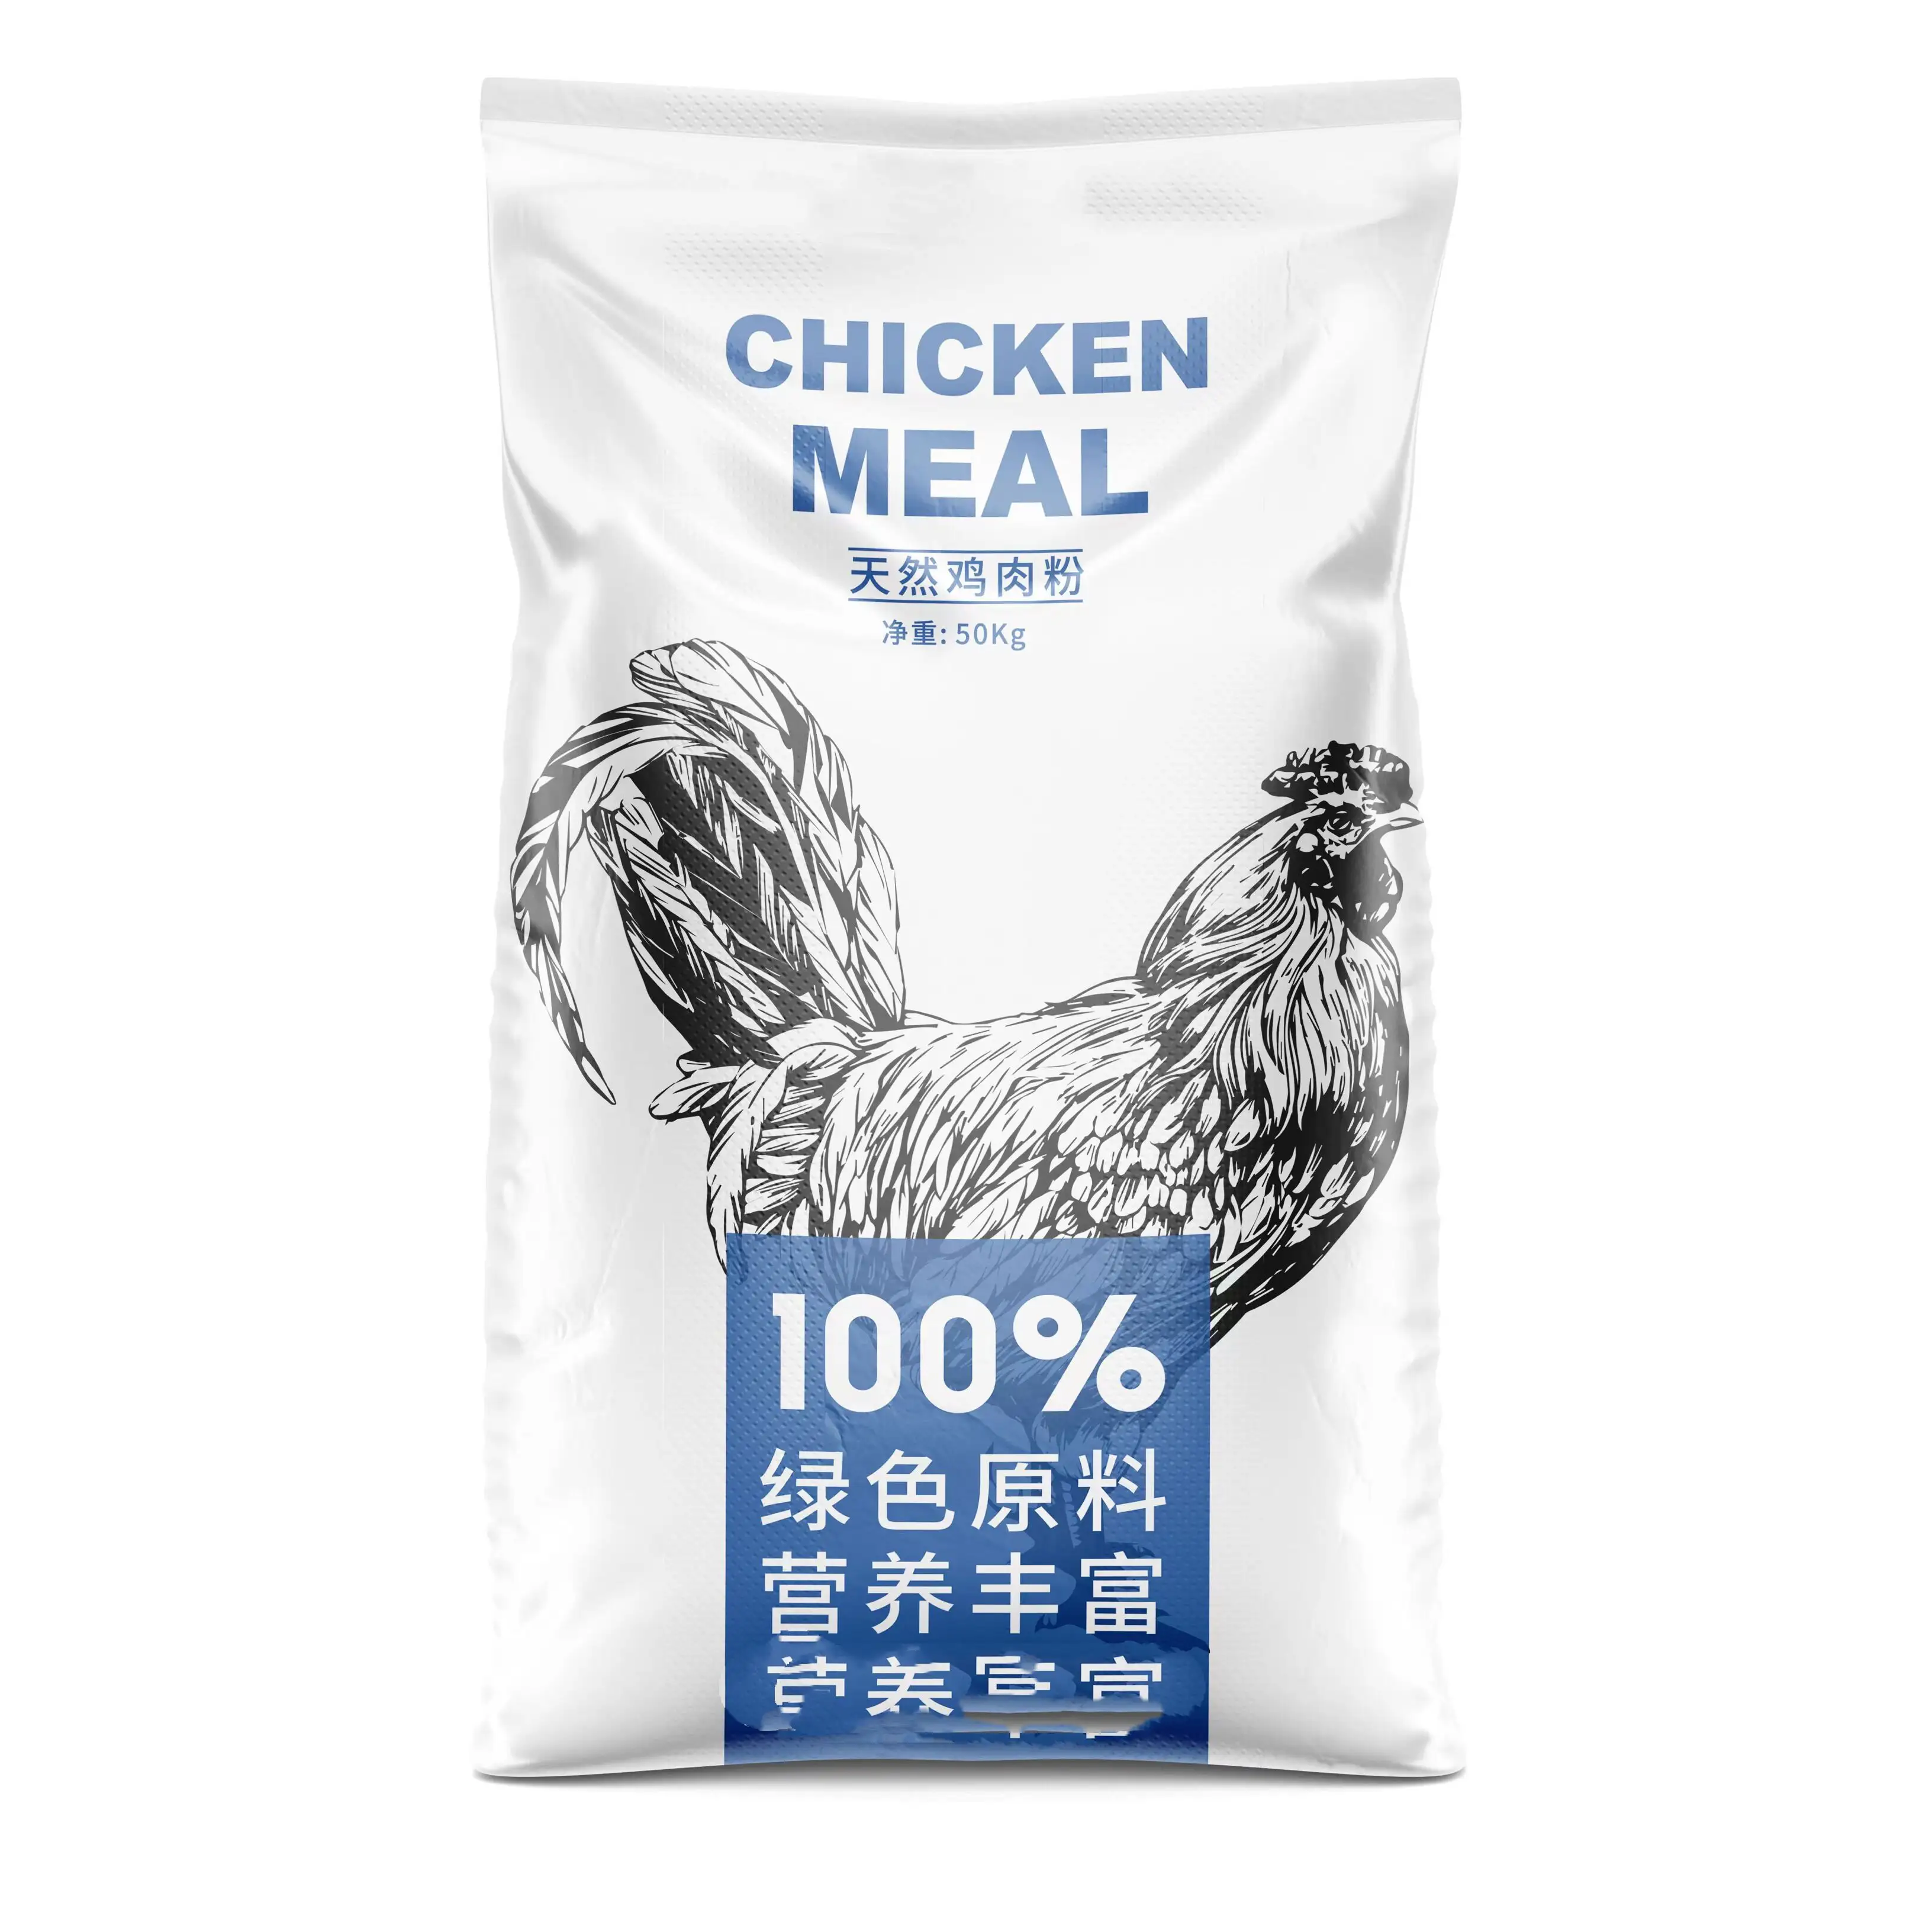 อาหารไก่/อาหารสัตว์ปีกอาหารเสริมโปรตีนสูง